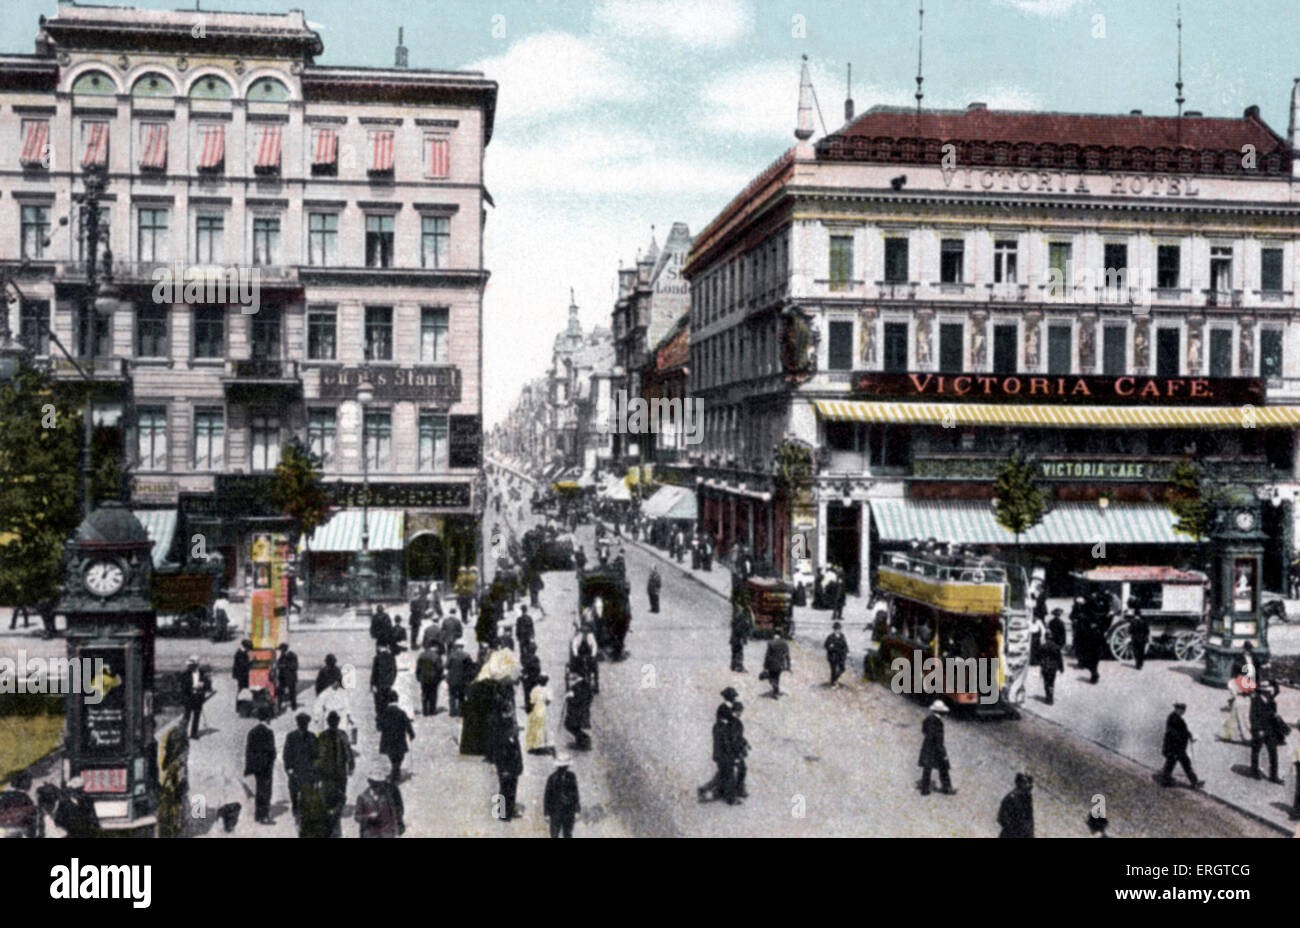 Berlino alla fine del ventesimo secolo. Il viale Unter den Linden, Friedrichstrasse. Fotografia di tram e carrozze trainate da cavalli. Foto Stock